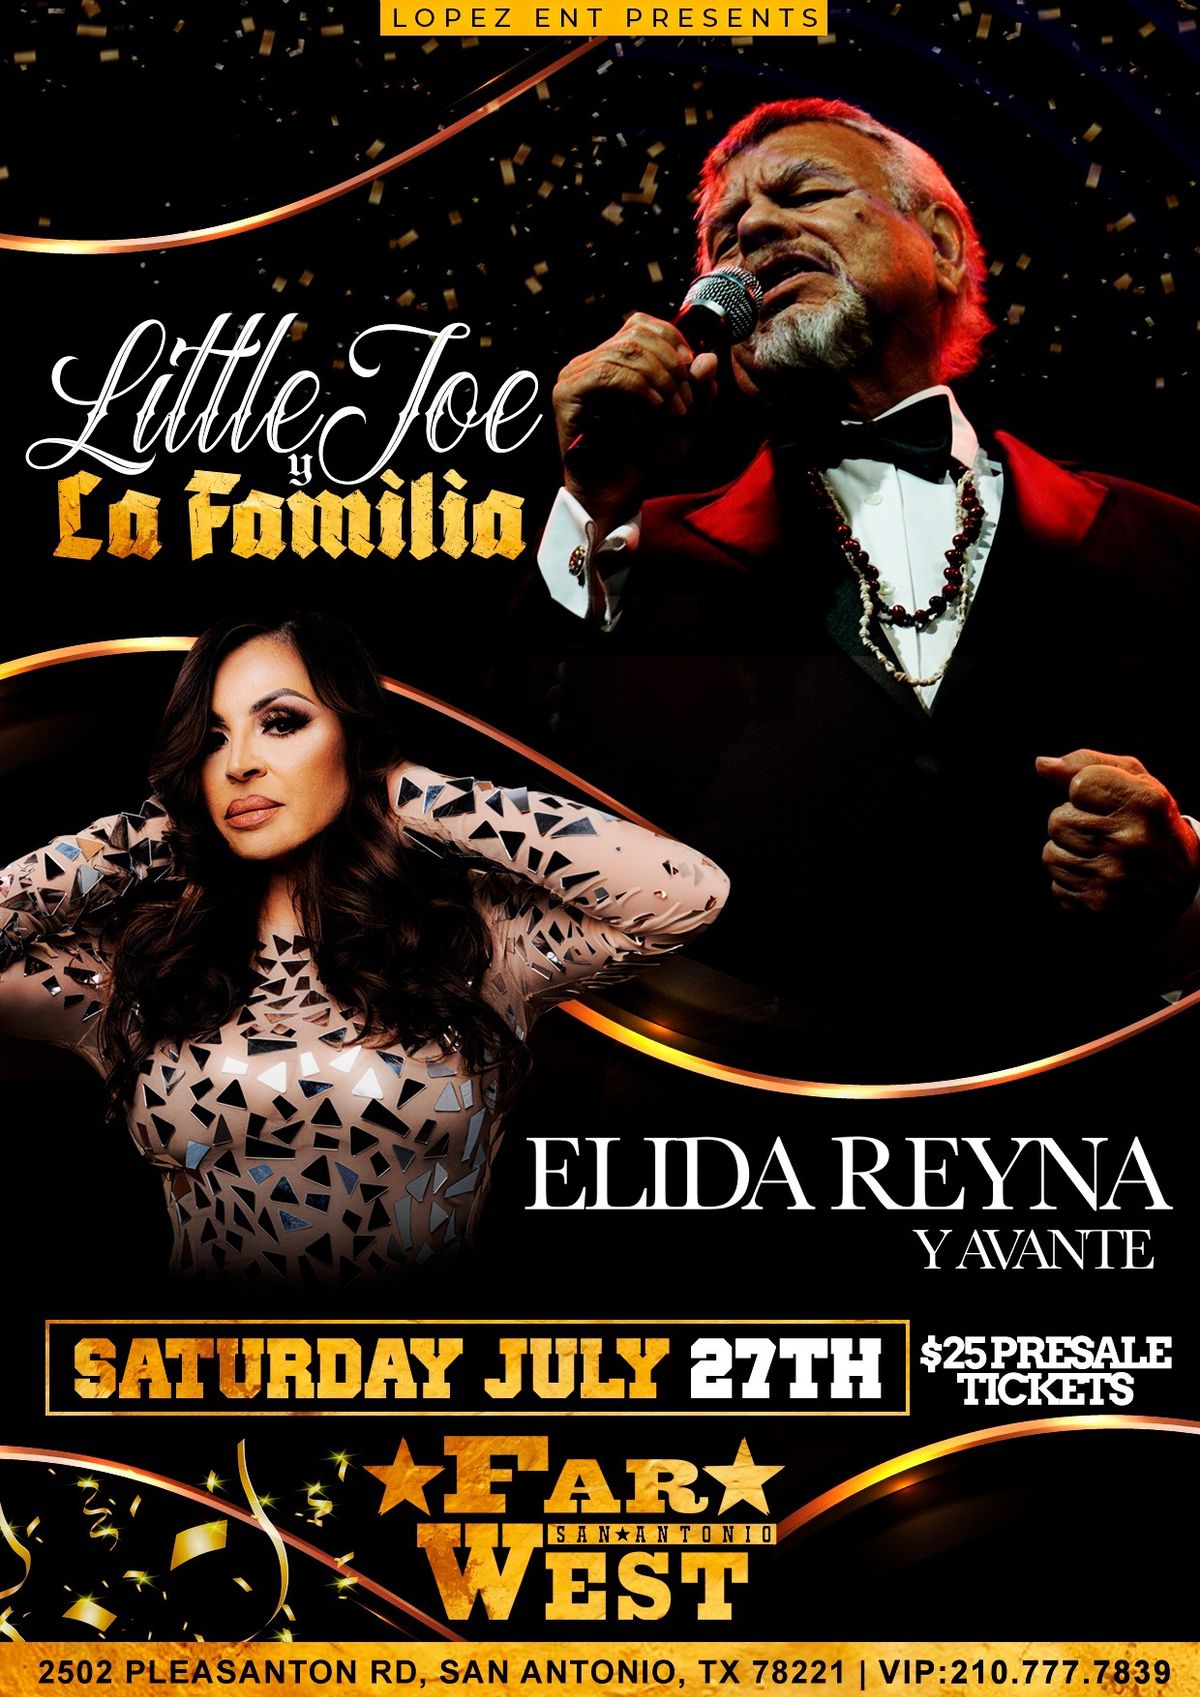 Elida Reyna Y Avante in San Antonio July 27th